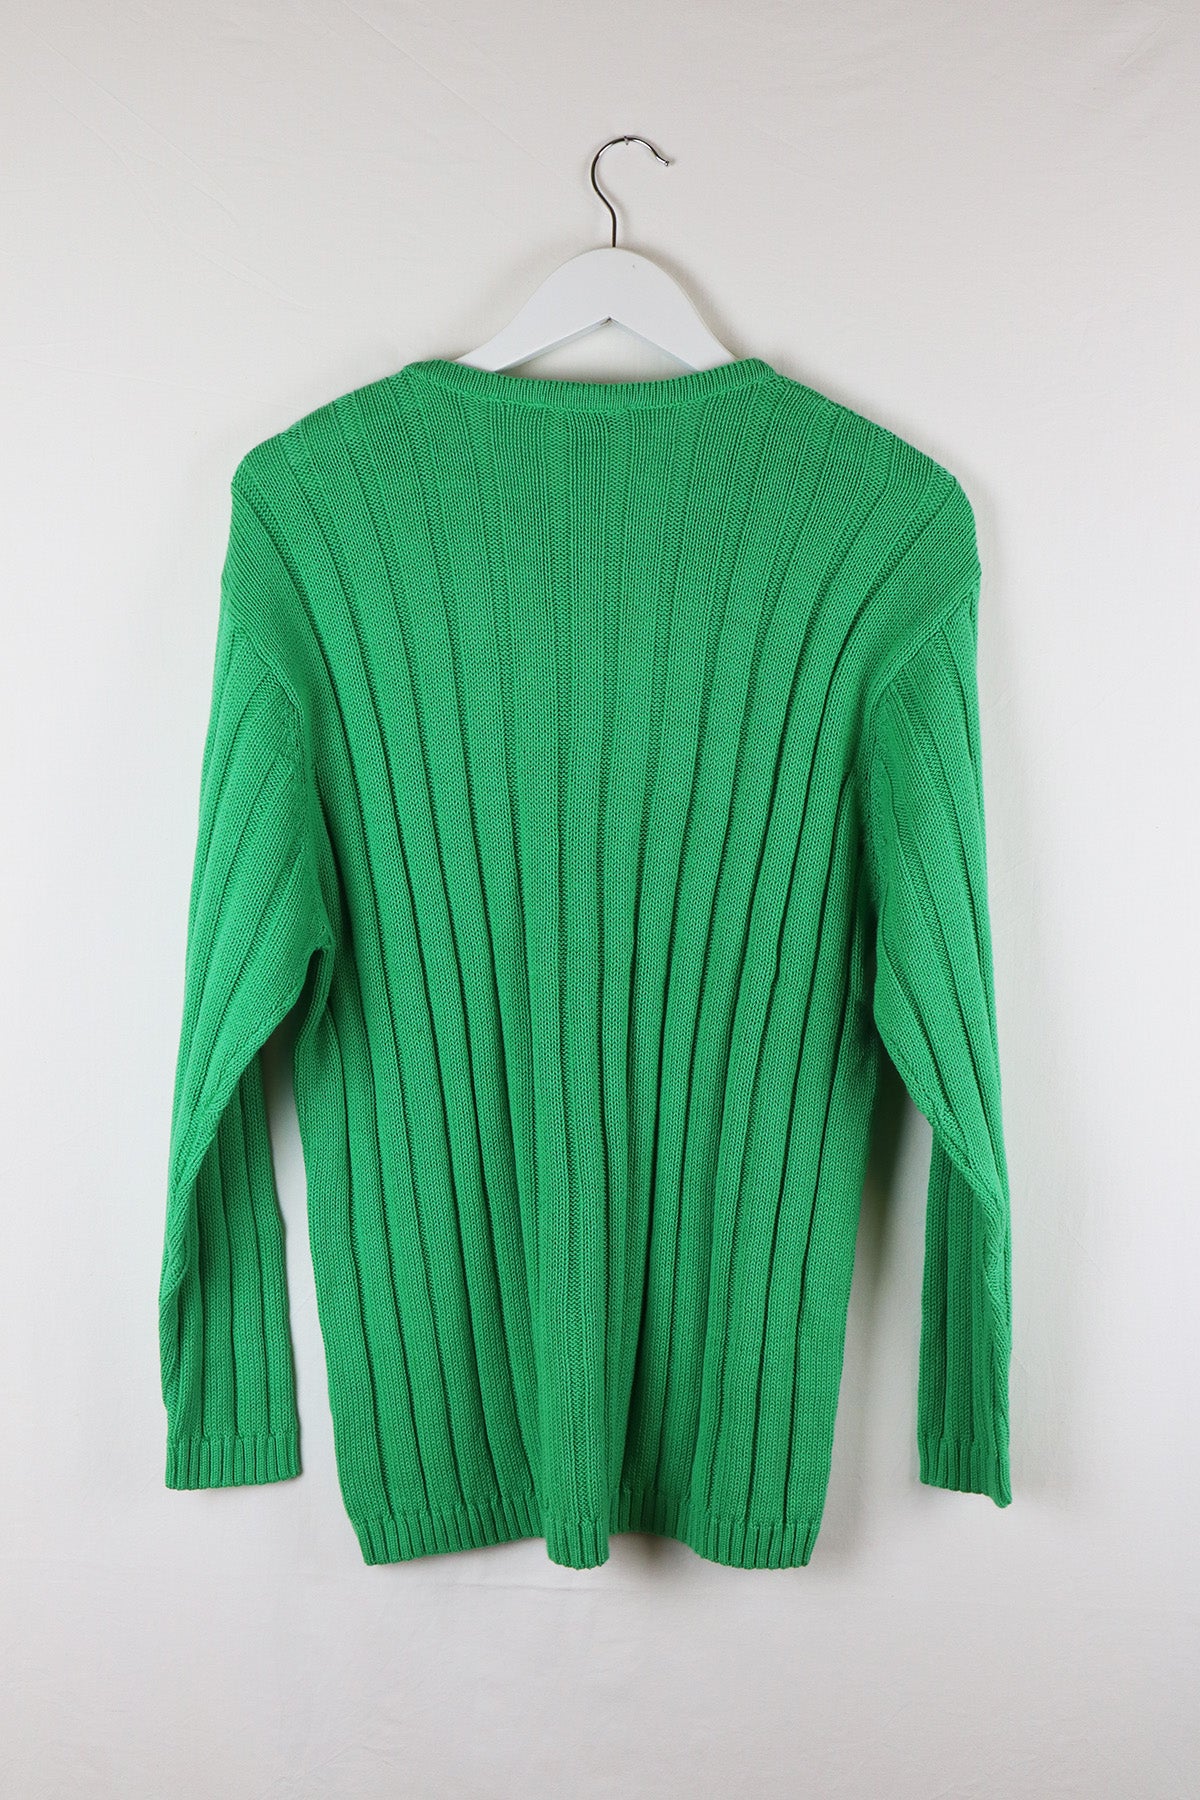 Pullover Vintage Grün Zopfstrick ( Gr.M )